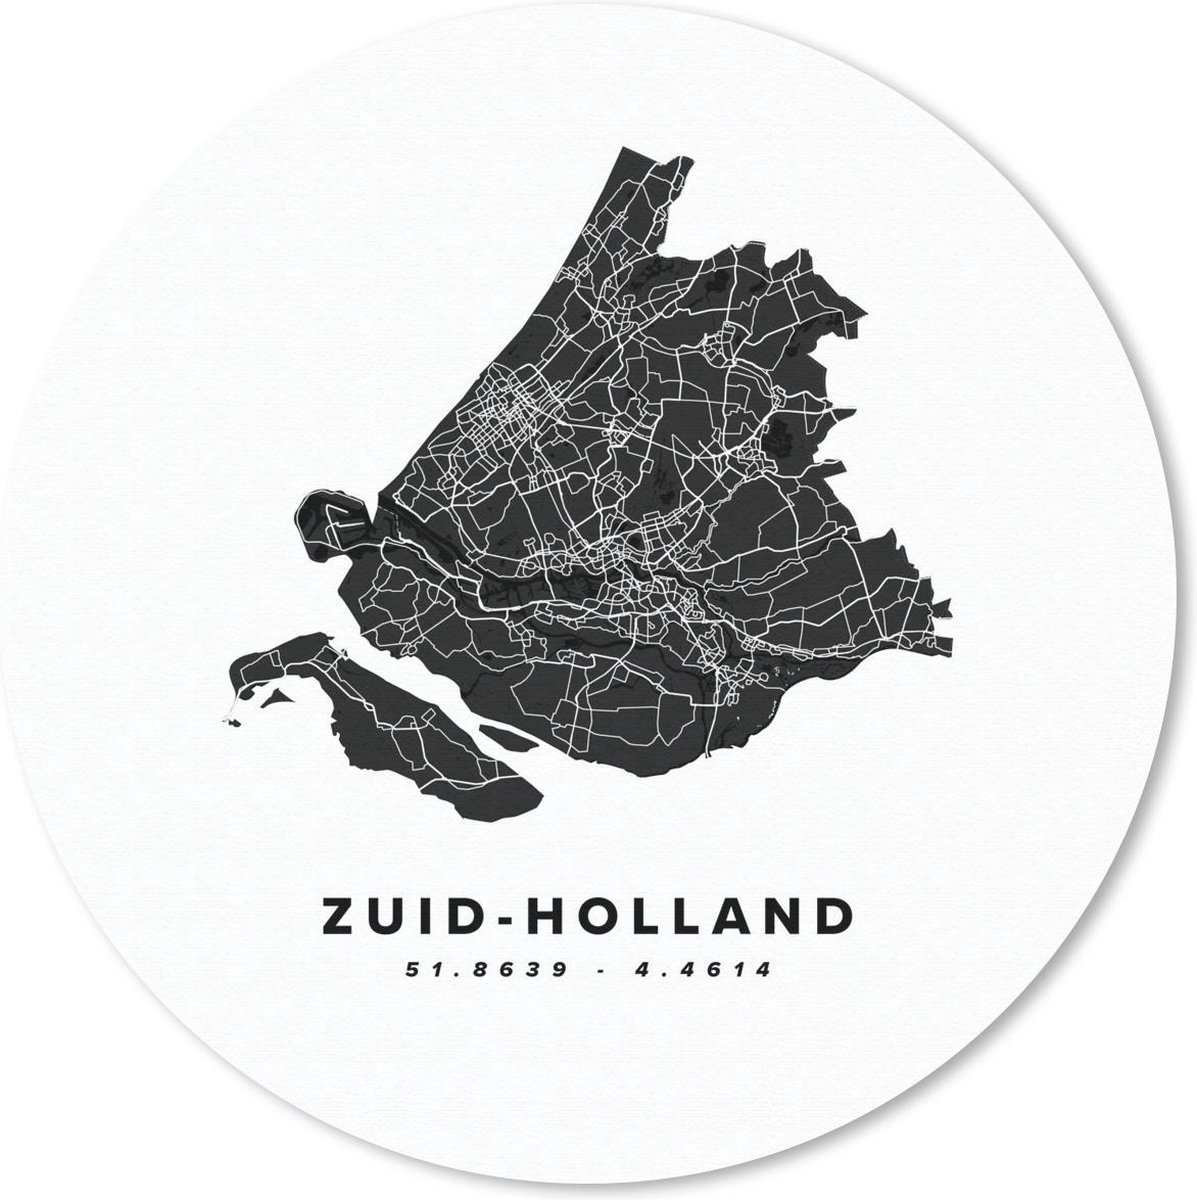 Muismat - Mousepad - Rond - Zuid-Holland - Nederland - Kaart - Wit - 50x50 cm - Ronde muismat